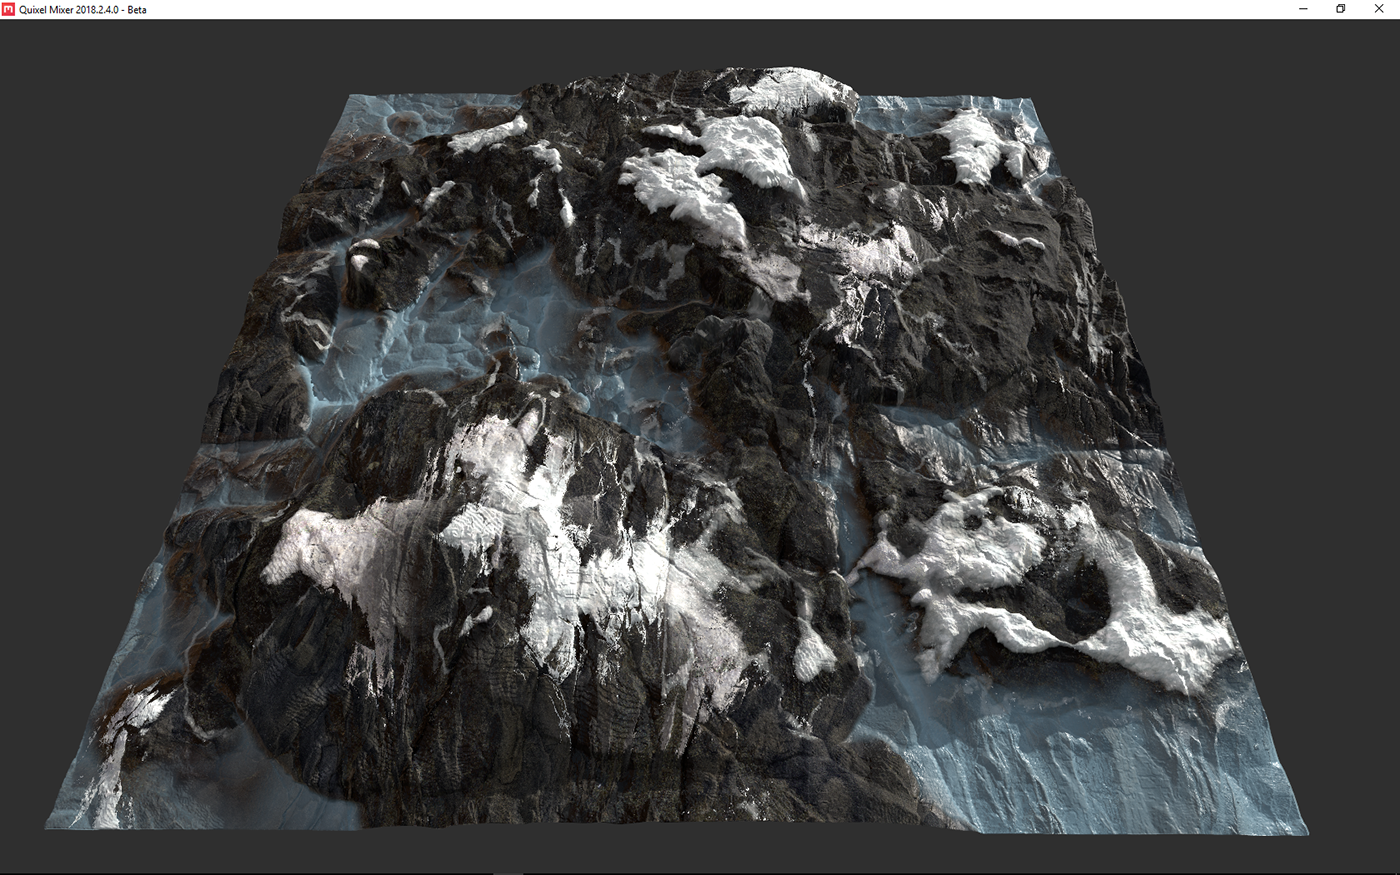 Quixel Mixer snow rock cliff Rock Texture SNOW ROCK TEXTURE